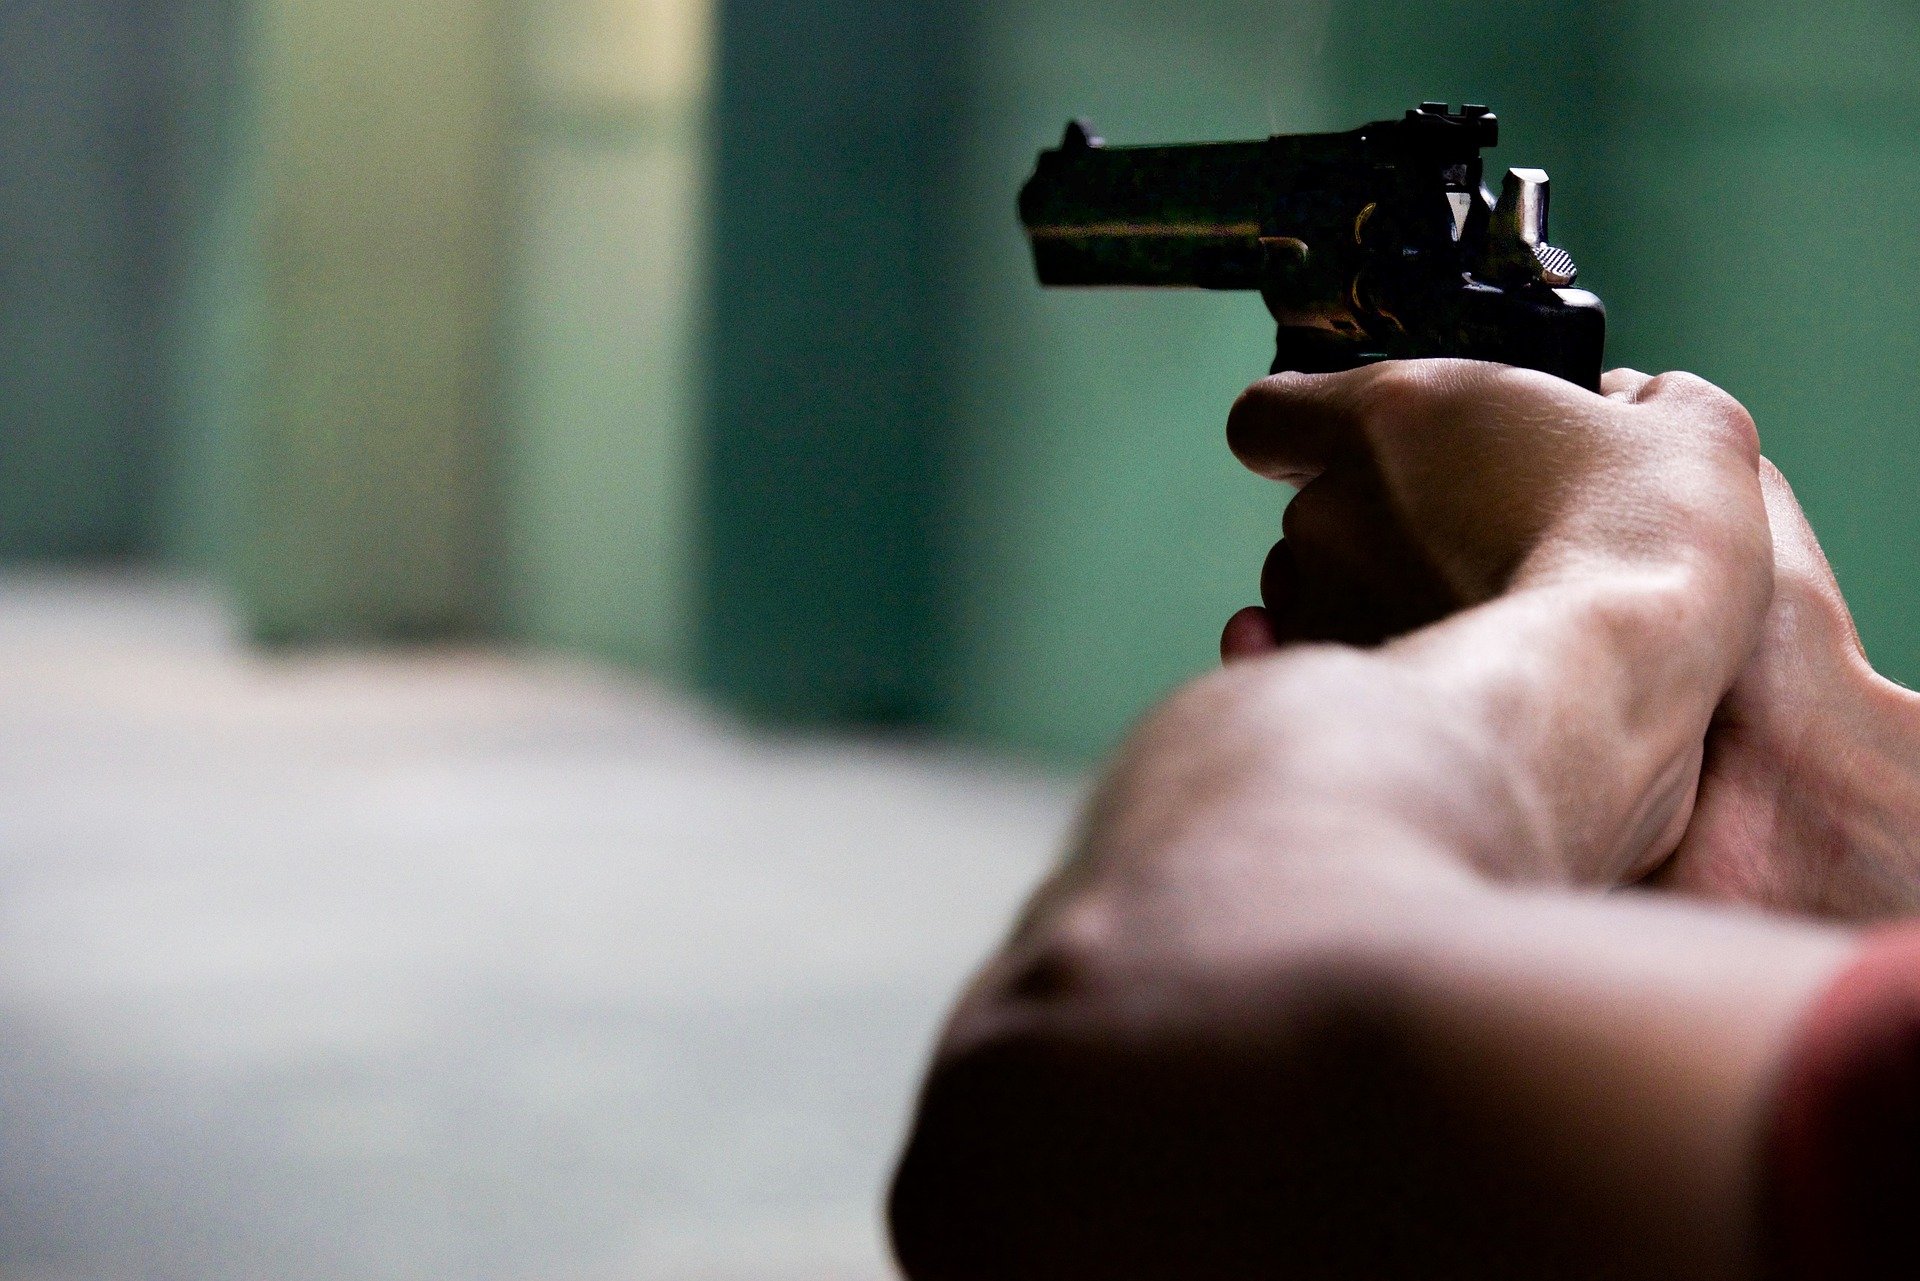 

В Ижевске неизвестный ограбил ларек, угрожая продавцу похожим на пистолет предметом

